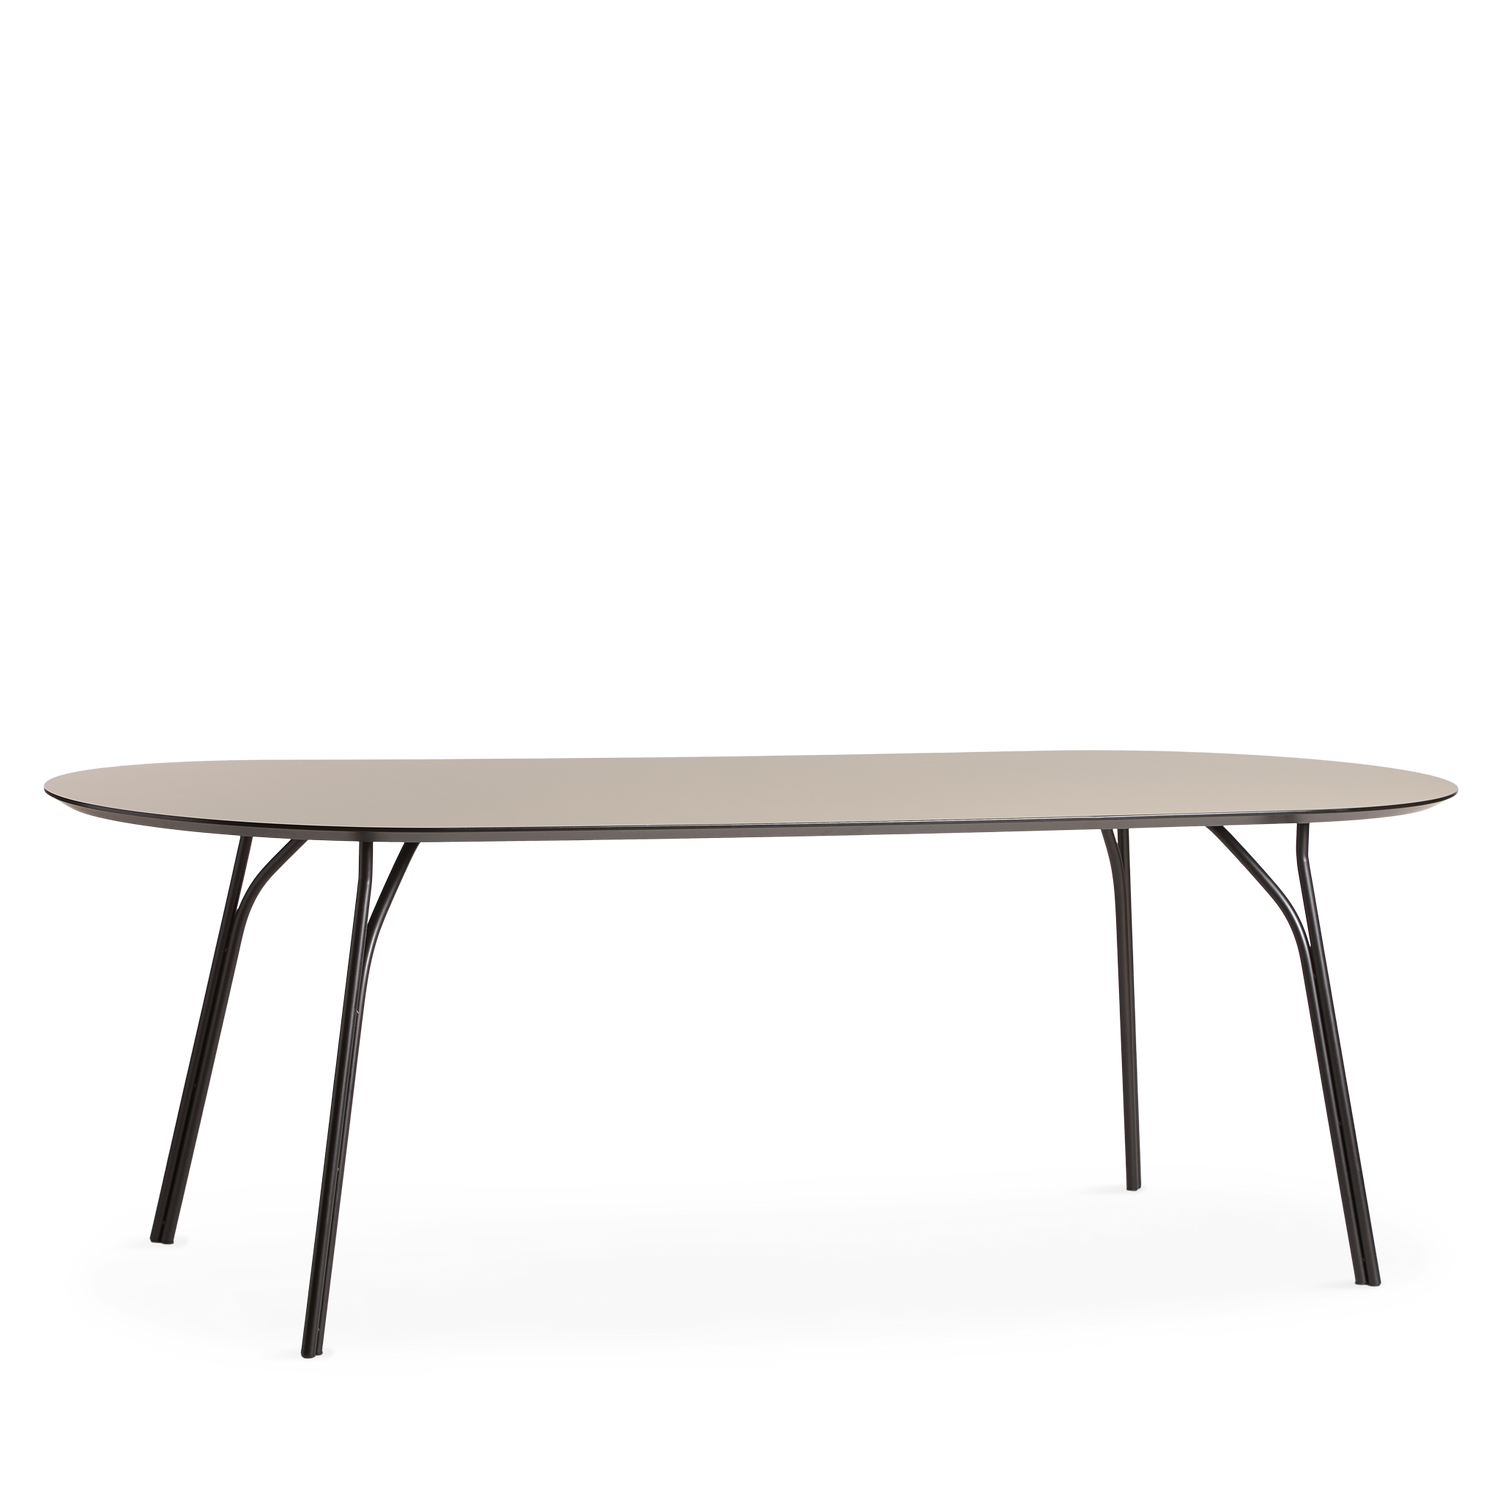 WOUD -  Tree dining table (220 cm) - Beige/black